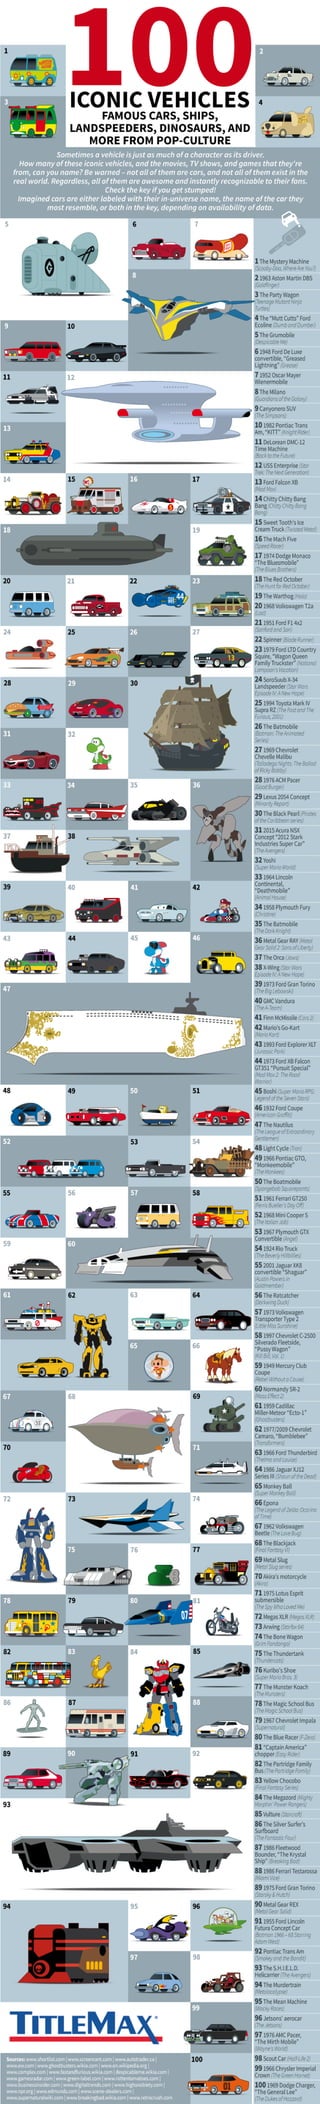 100 Iconic Vehicles